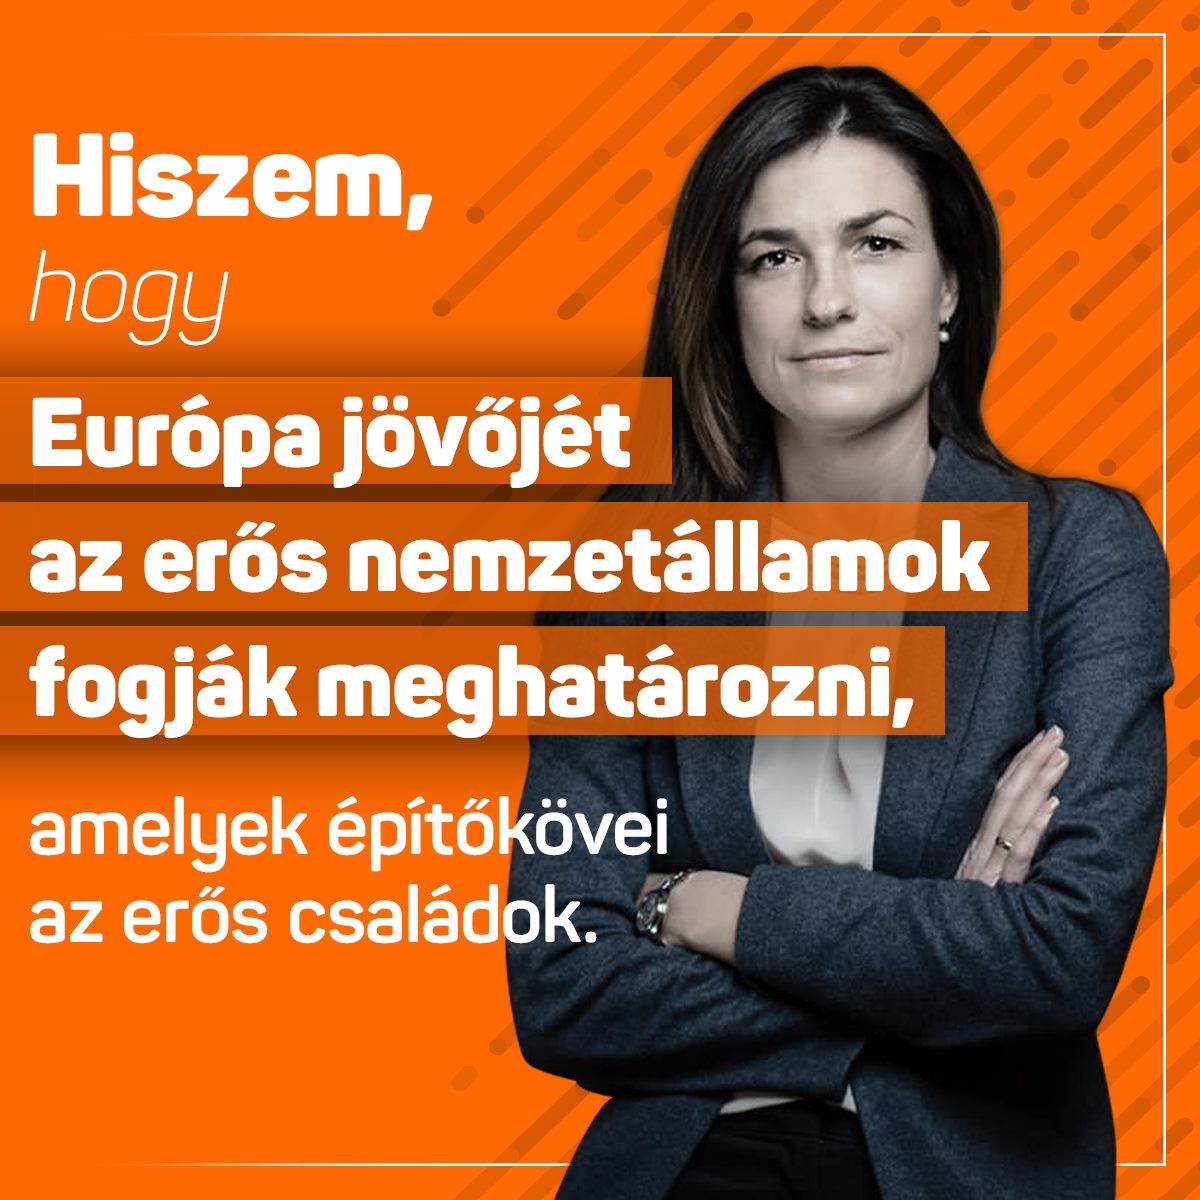 Varga Judit – Hiszem, hogy Európa jövőjét az erős nemzetállamok fogják meghatározni, amelyek építőkövei az erős családok